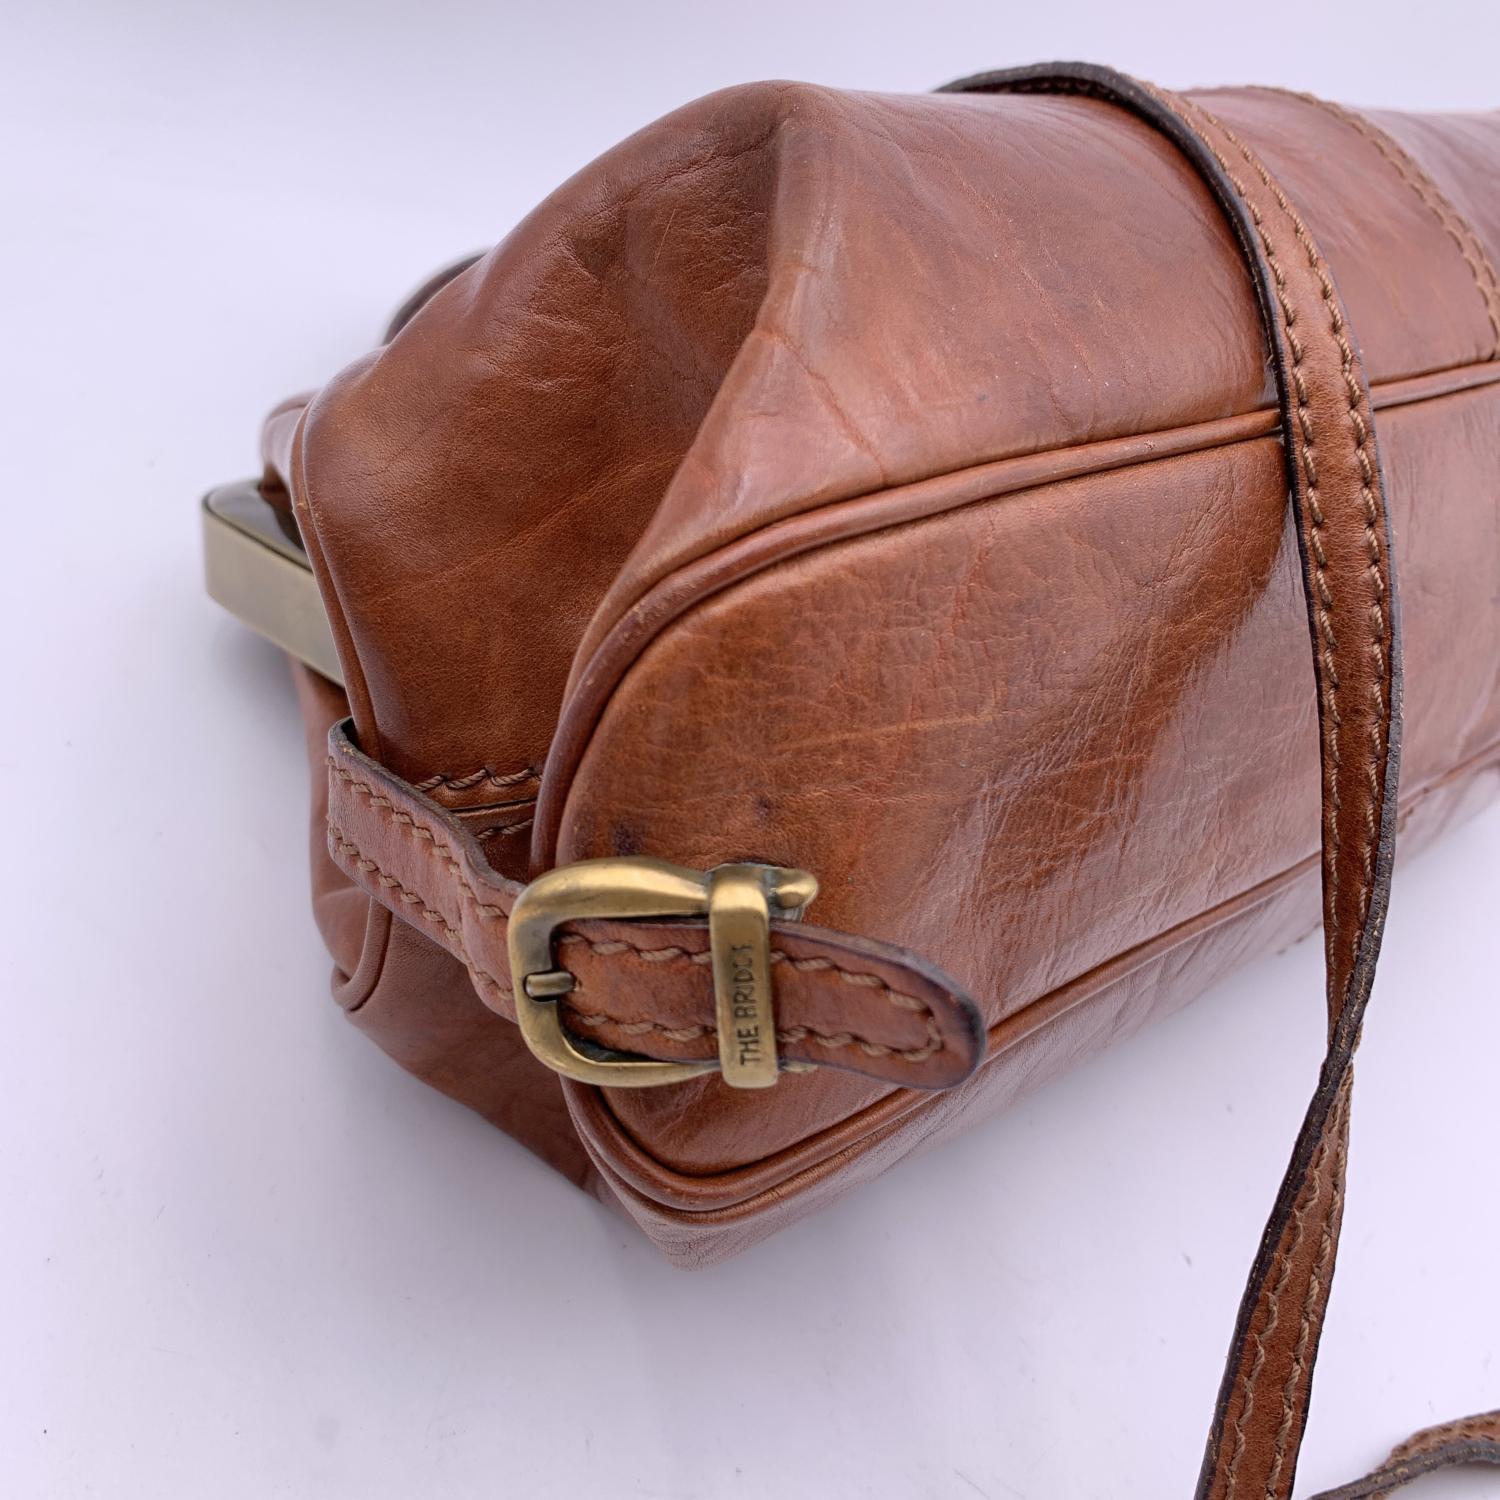 The Bridge Vintage Brown Leather Doctor Bag Satchel Handbag with Strap 2